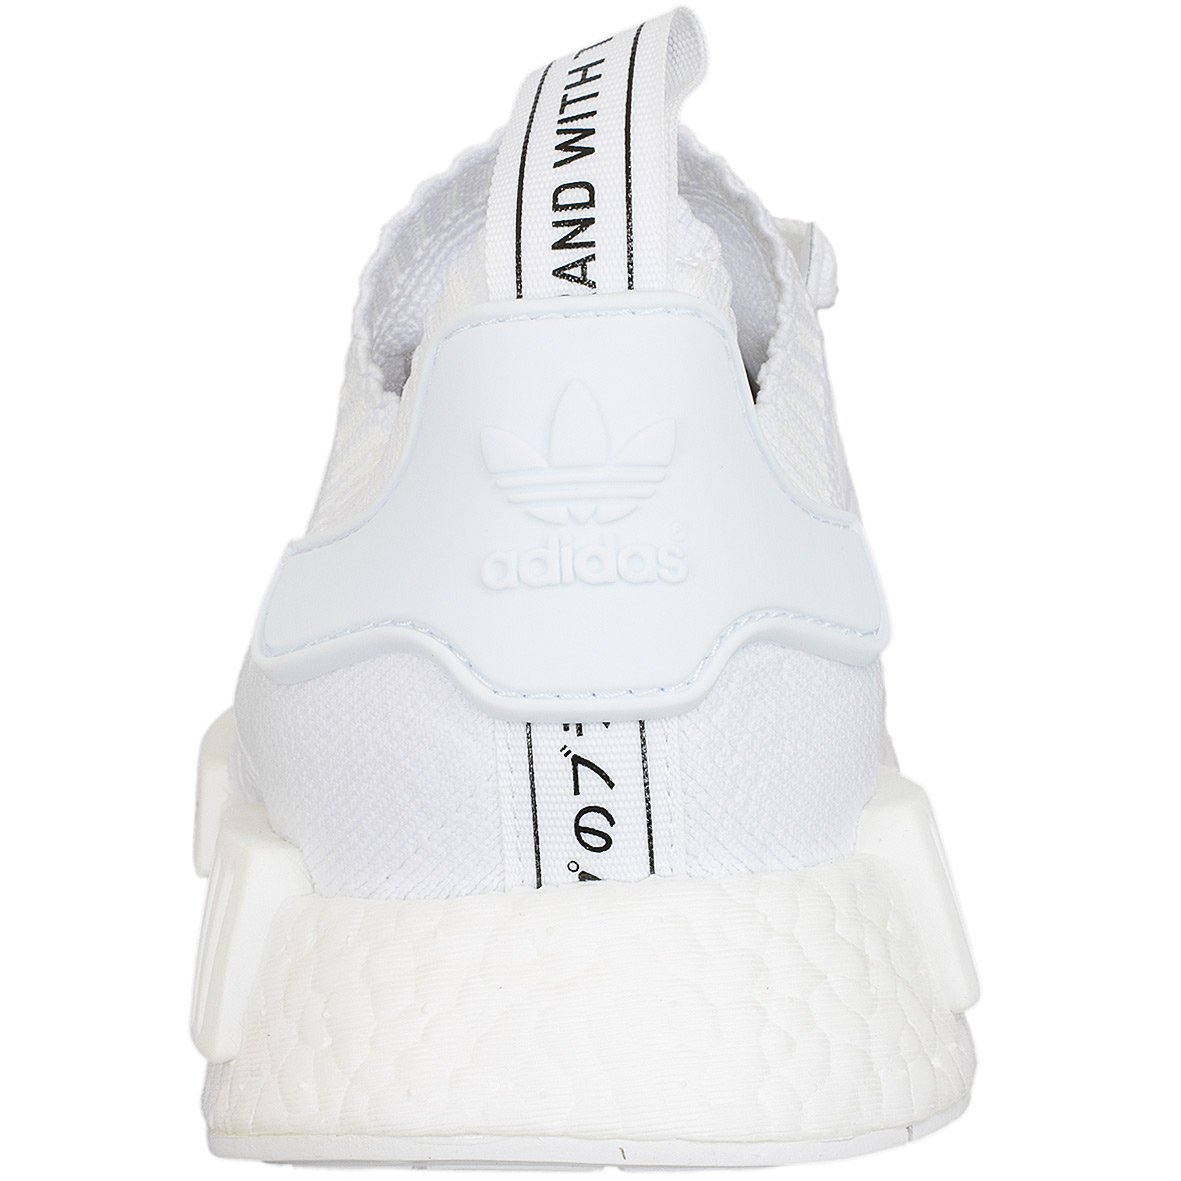 ☆ Adidas Originals Sneaker NMD R1 Primeknit weiß/weiß - hier bestellen!